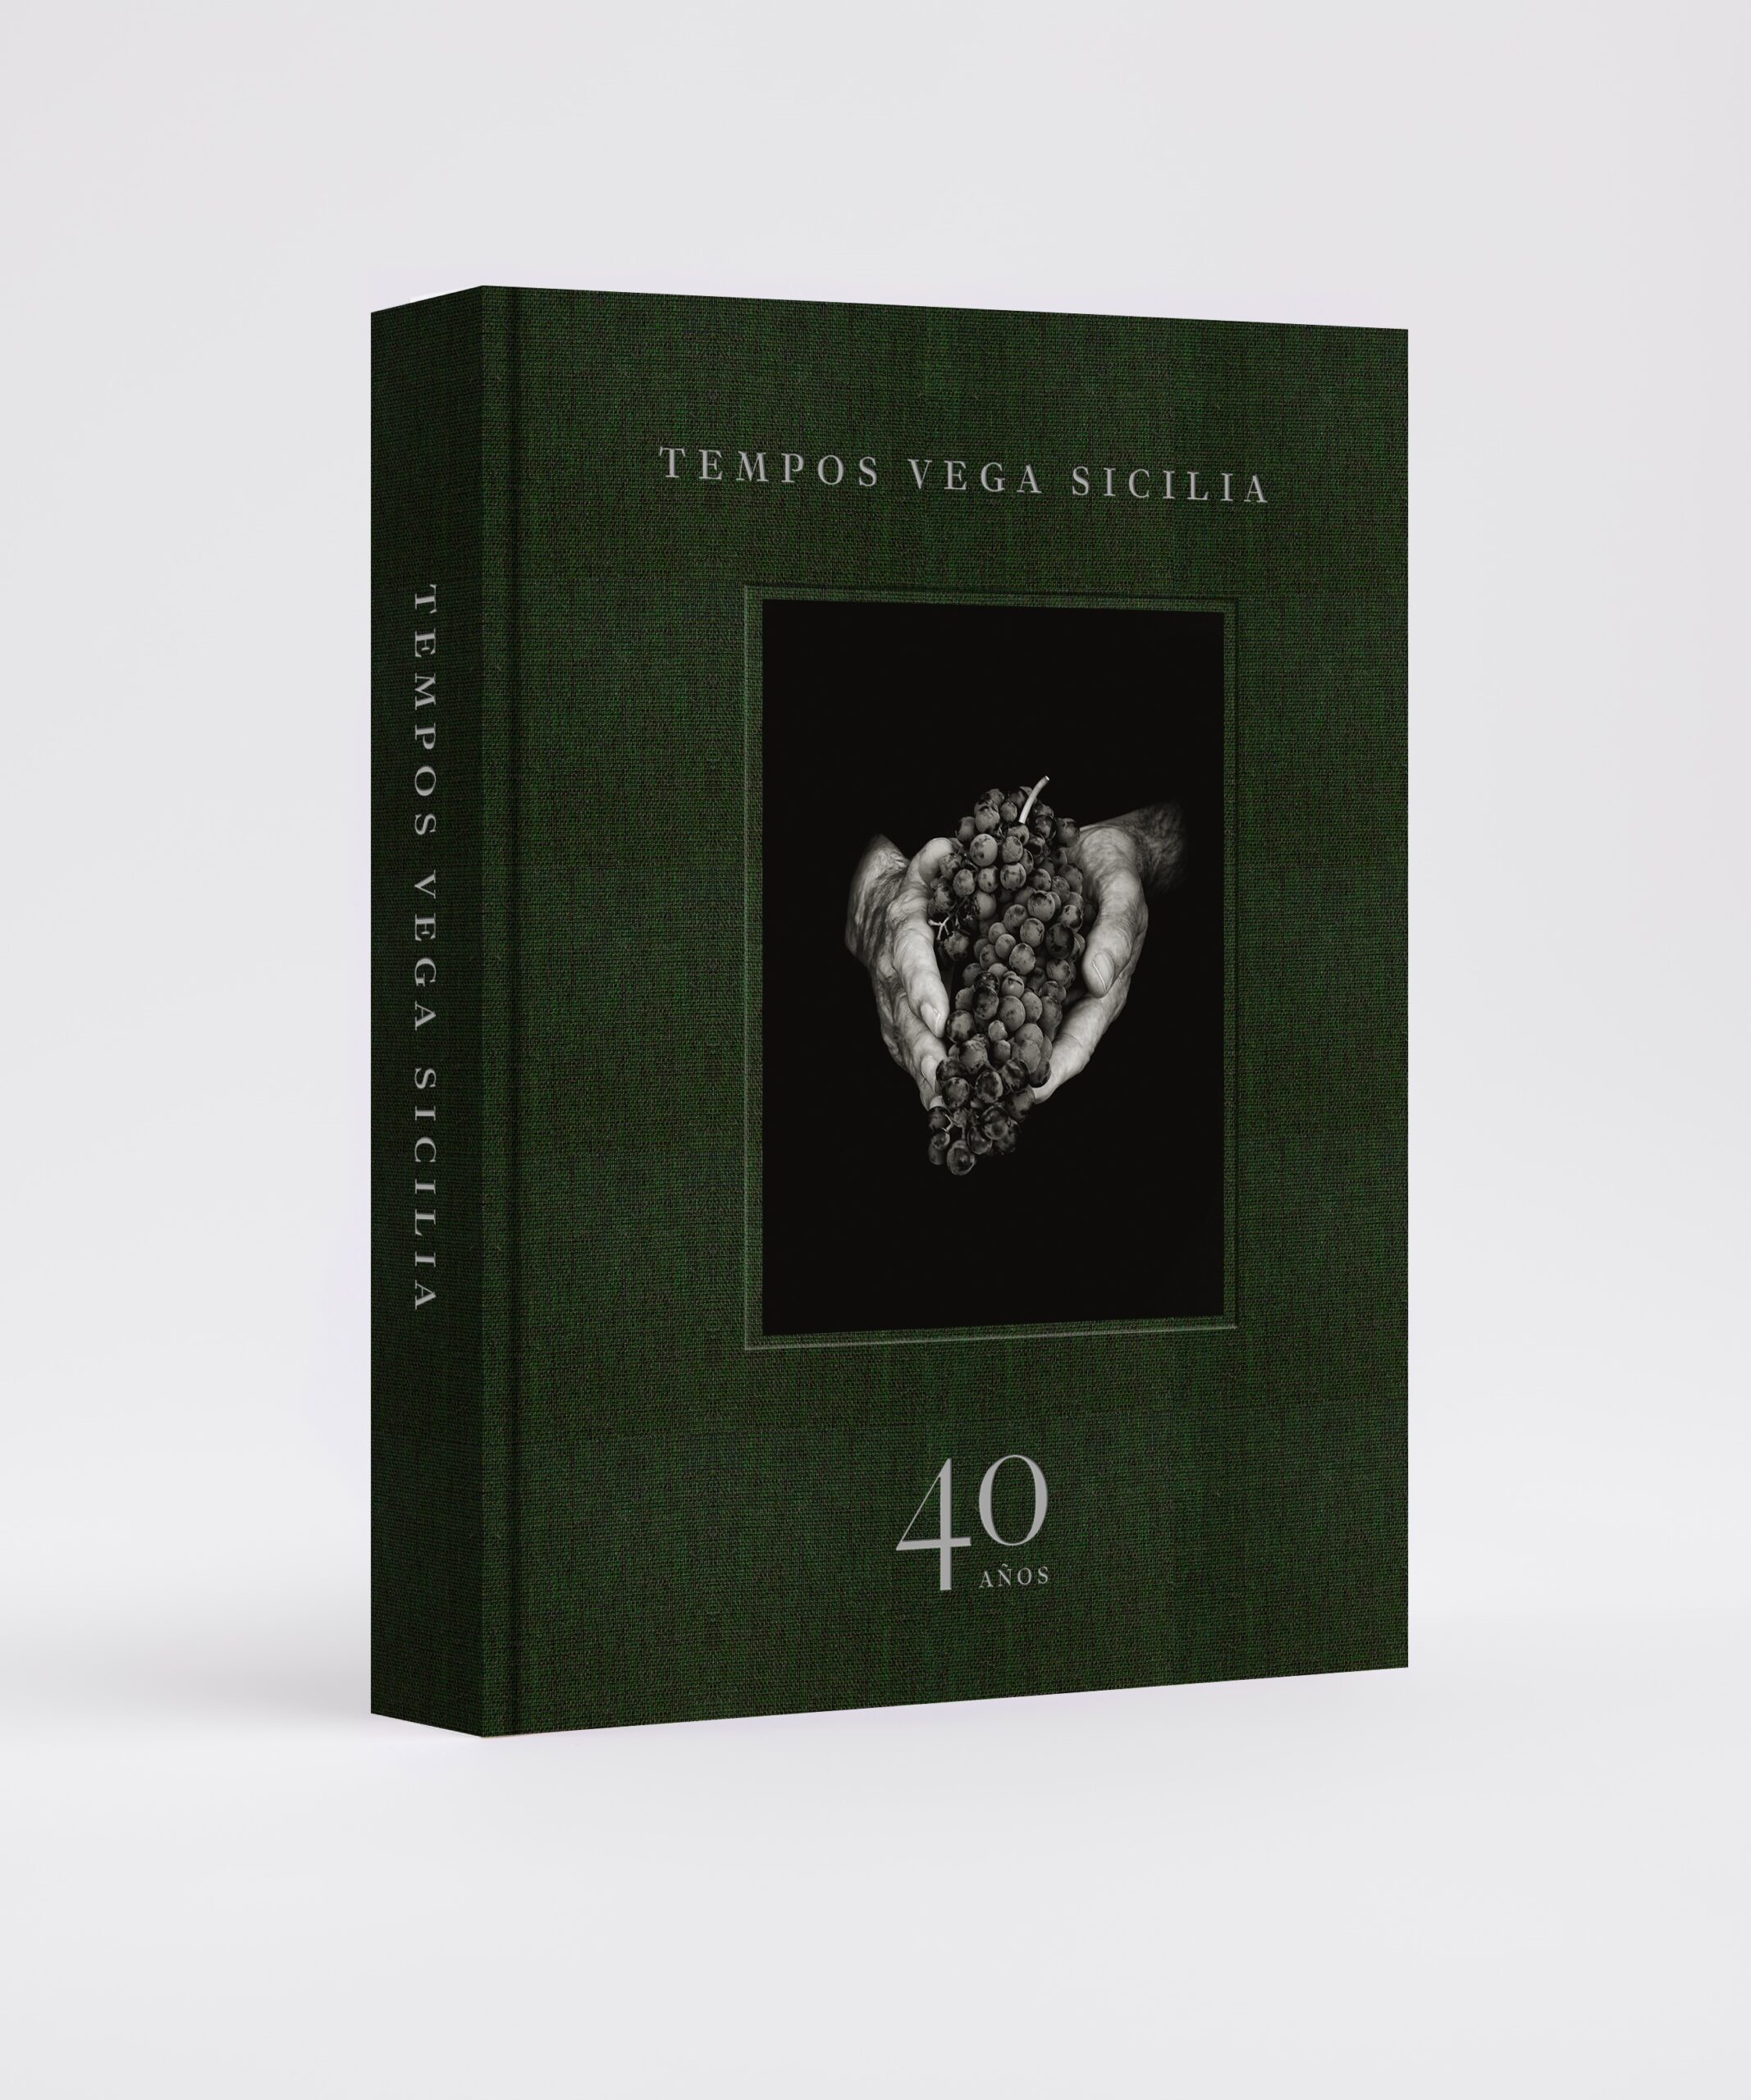 Economía.- La bodega Tempos Vega Sicilia presenta un libro por sus 40 años, ‘El misterio de Vega Sicilia’